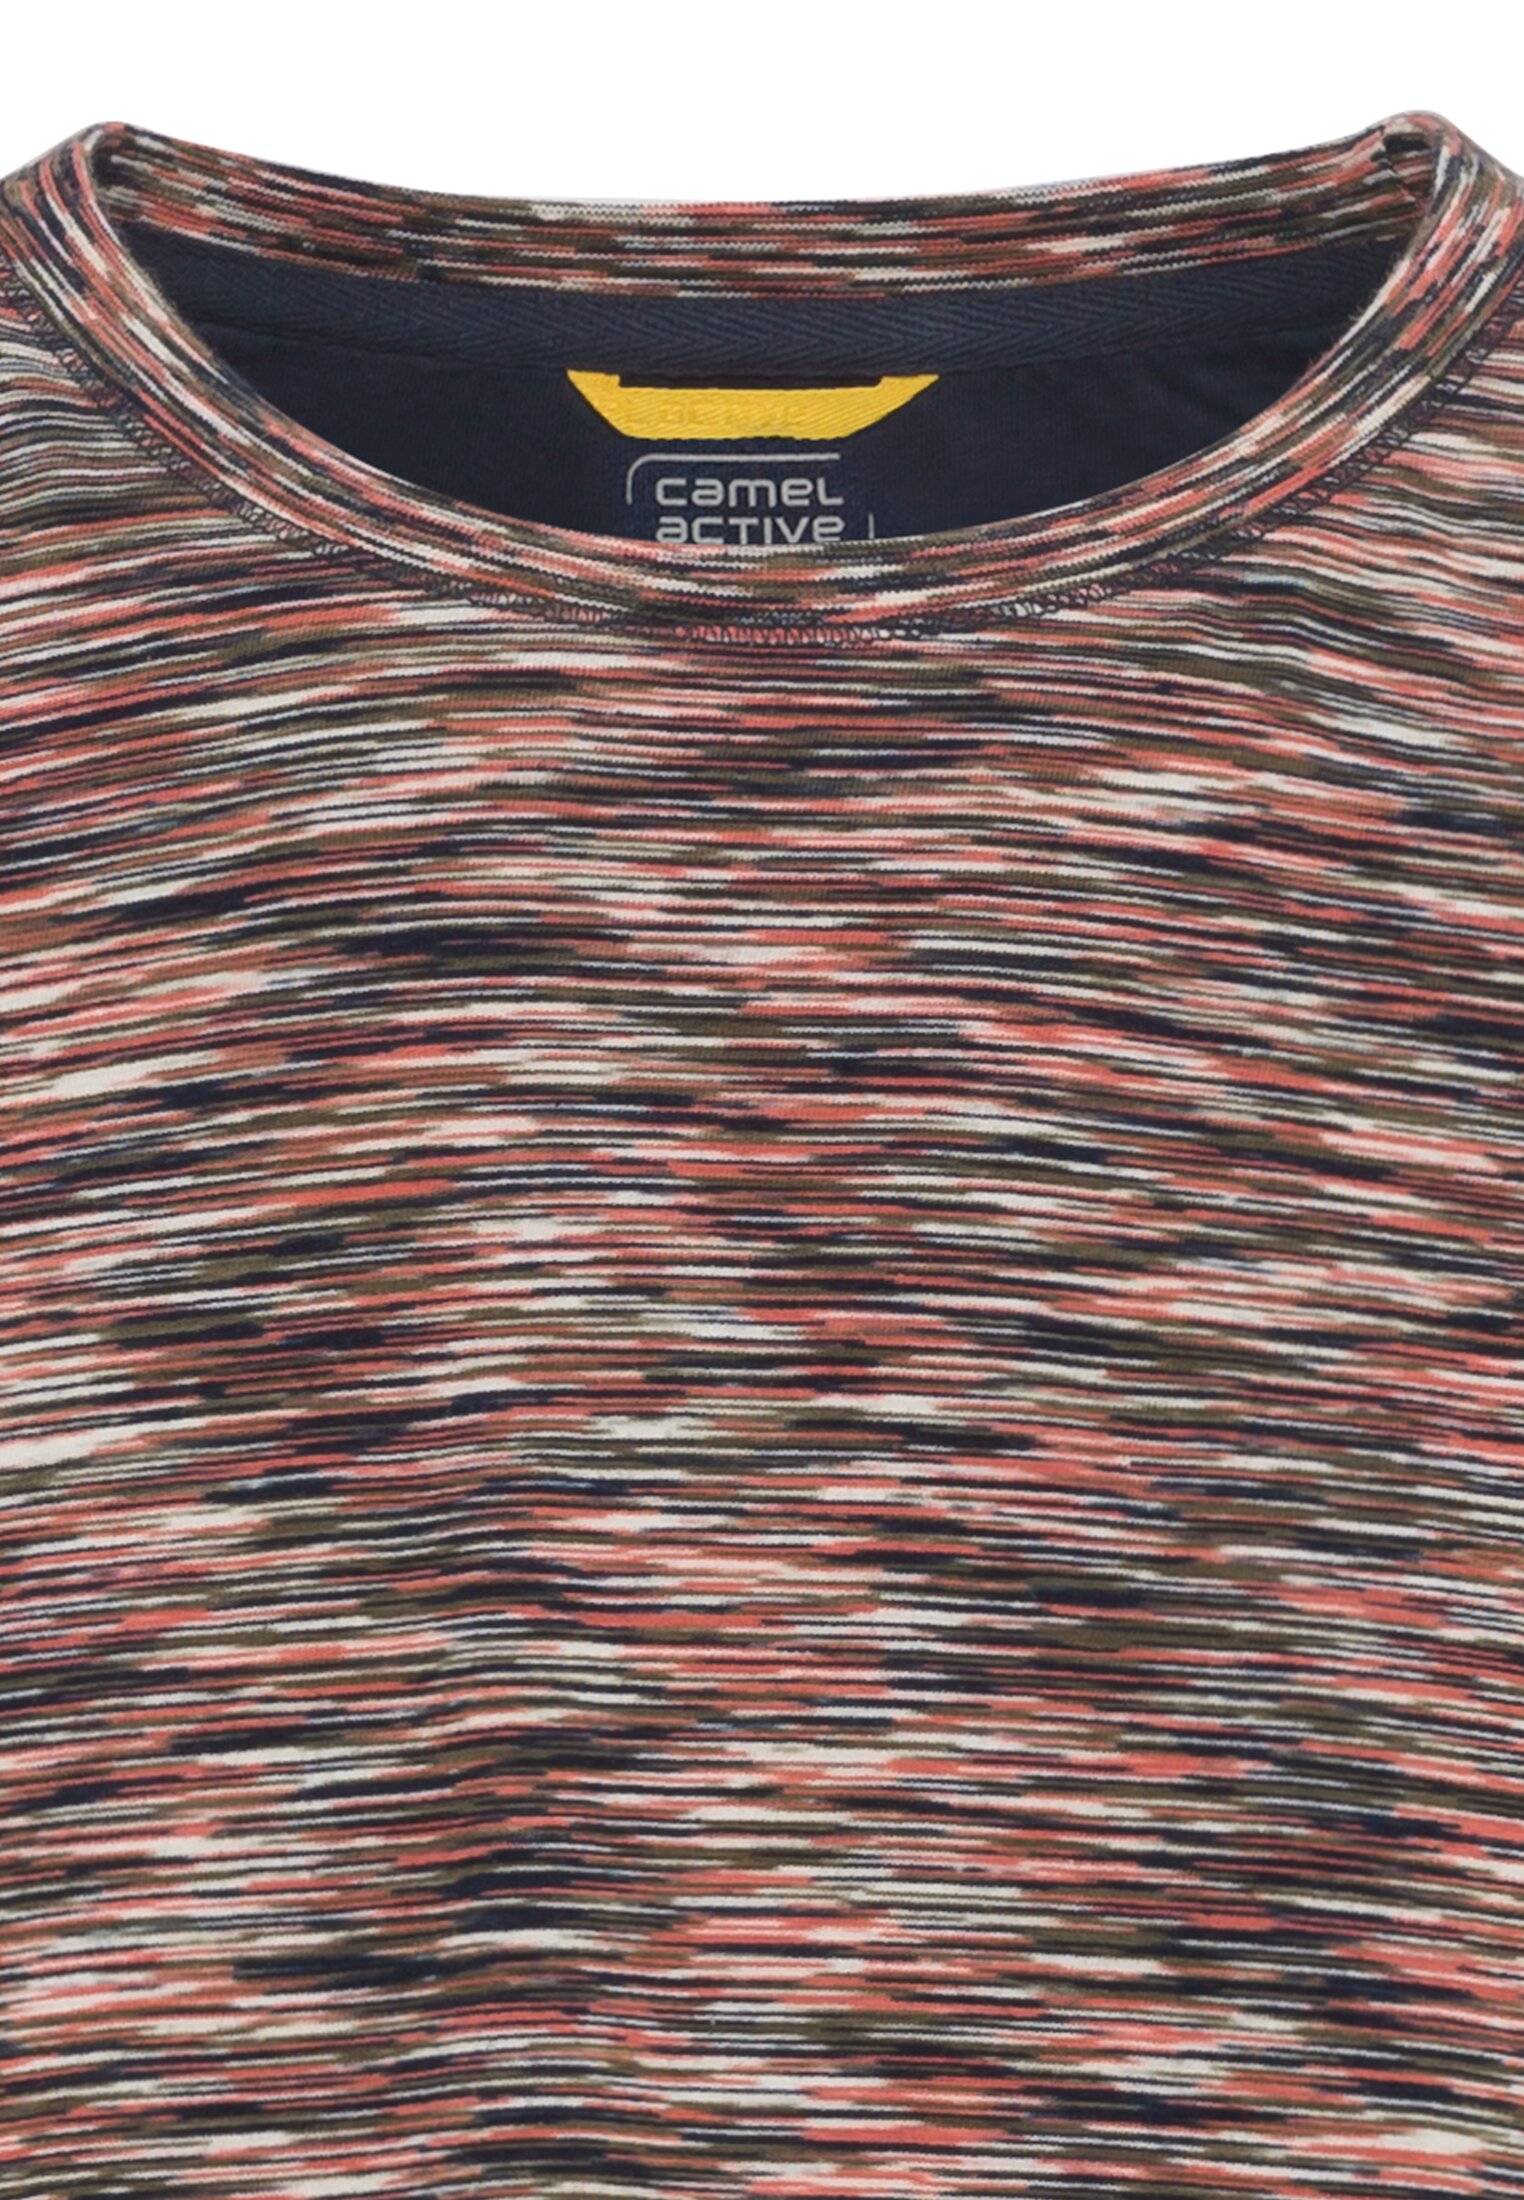 Мужская футболка Camel Active, коралловая, цвет коралловый, размер 50 - фото 3